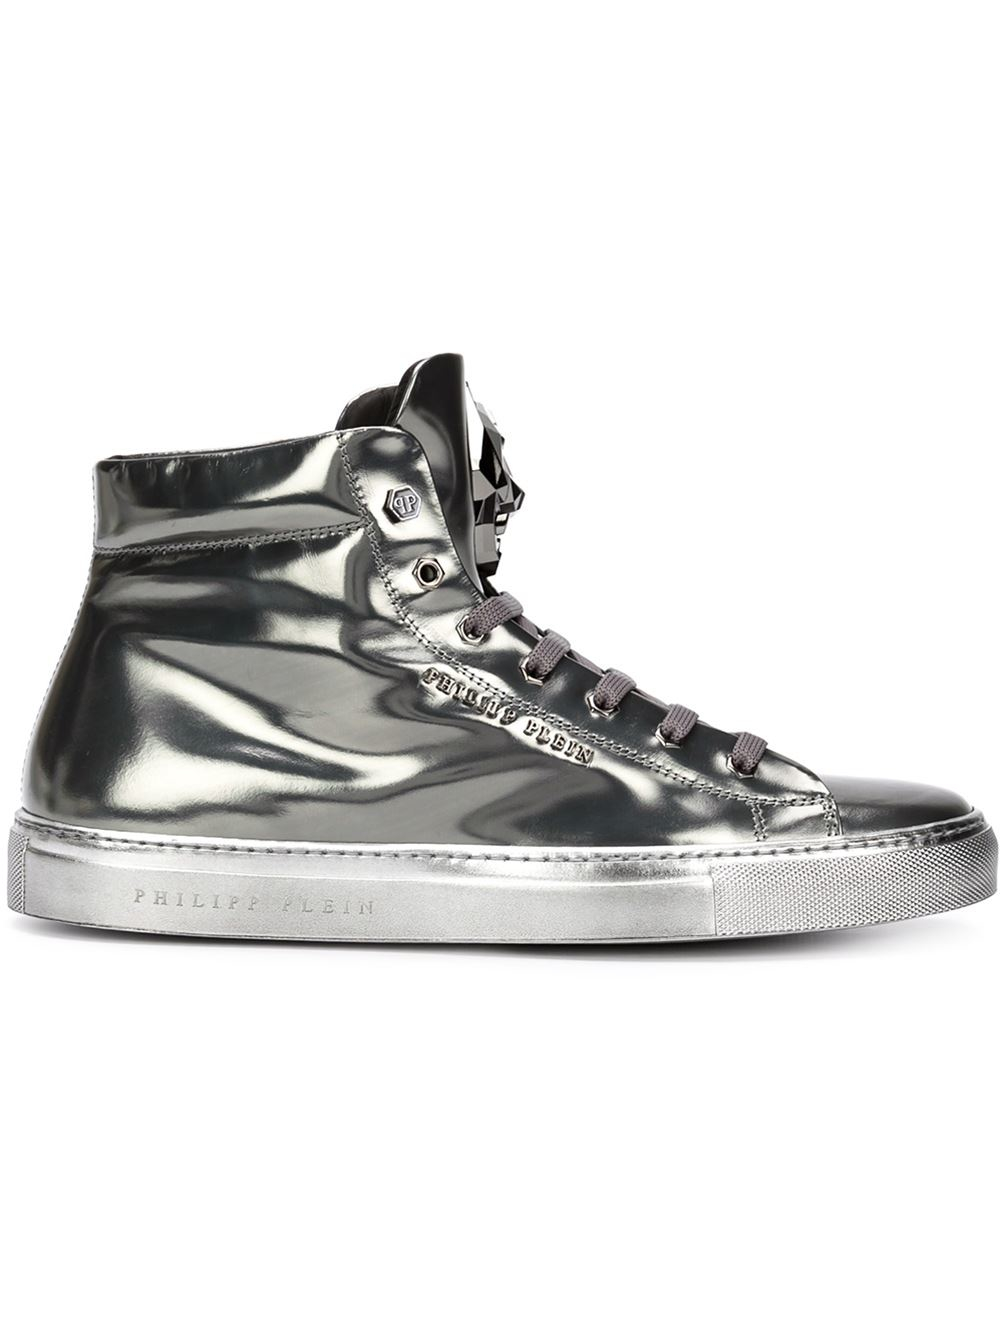 Philipp Plein 'last Night' Hi-top Sneakers in Grey (Metallic) for Men - Lyst